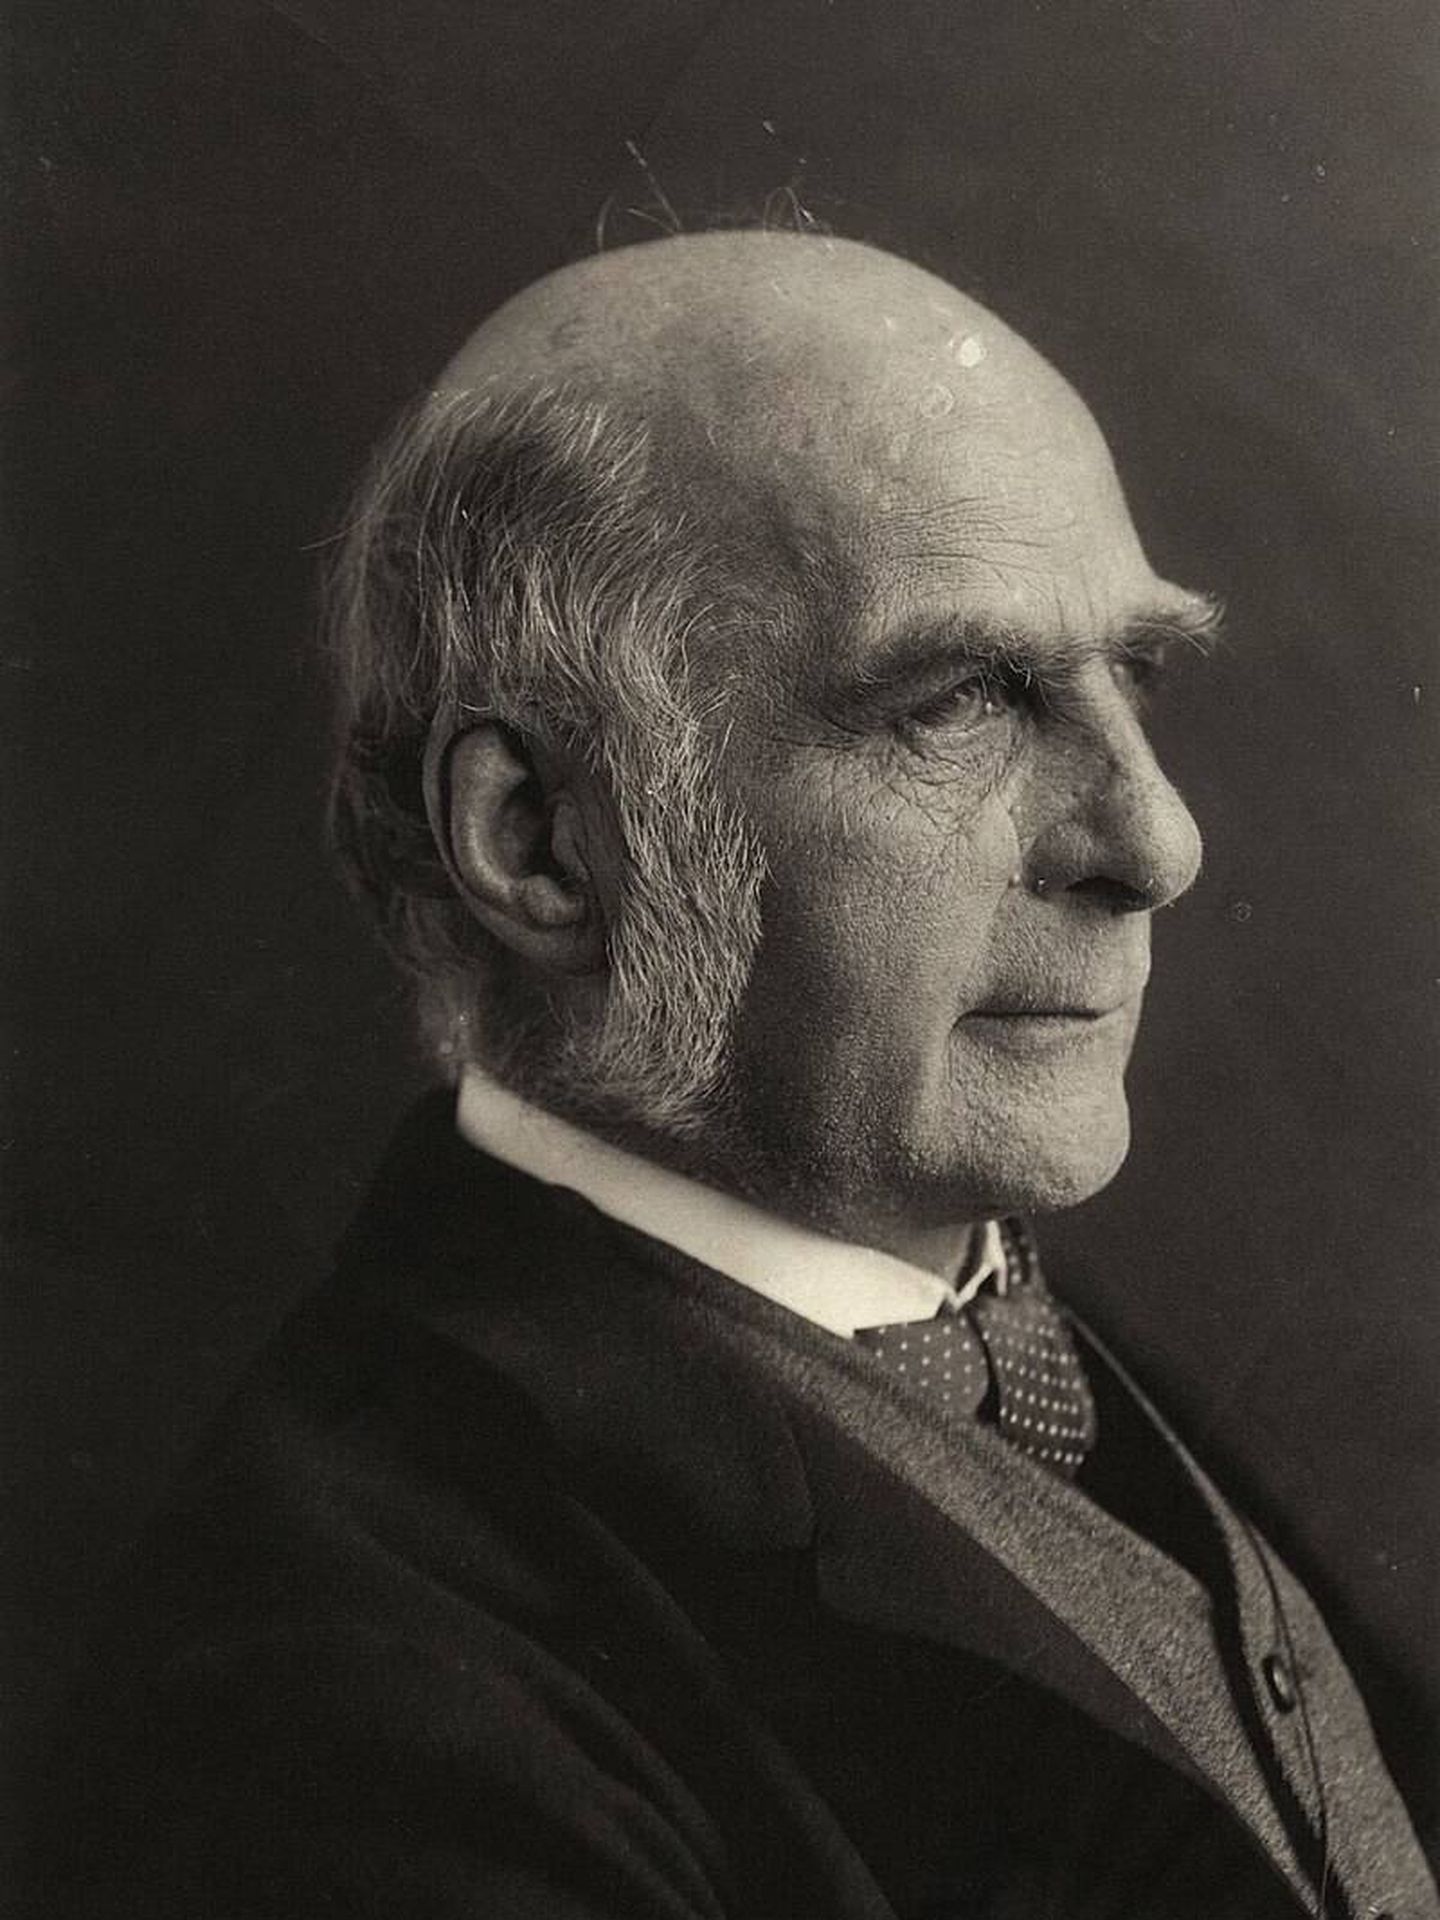 Fotografía antigua de Sir Francis Galton. (Wikipedia)